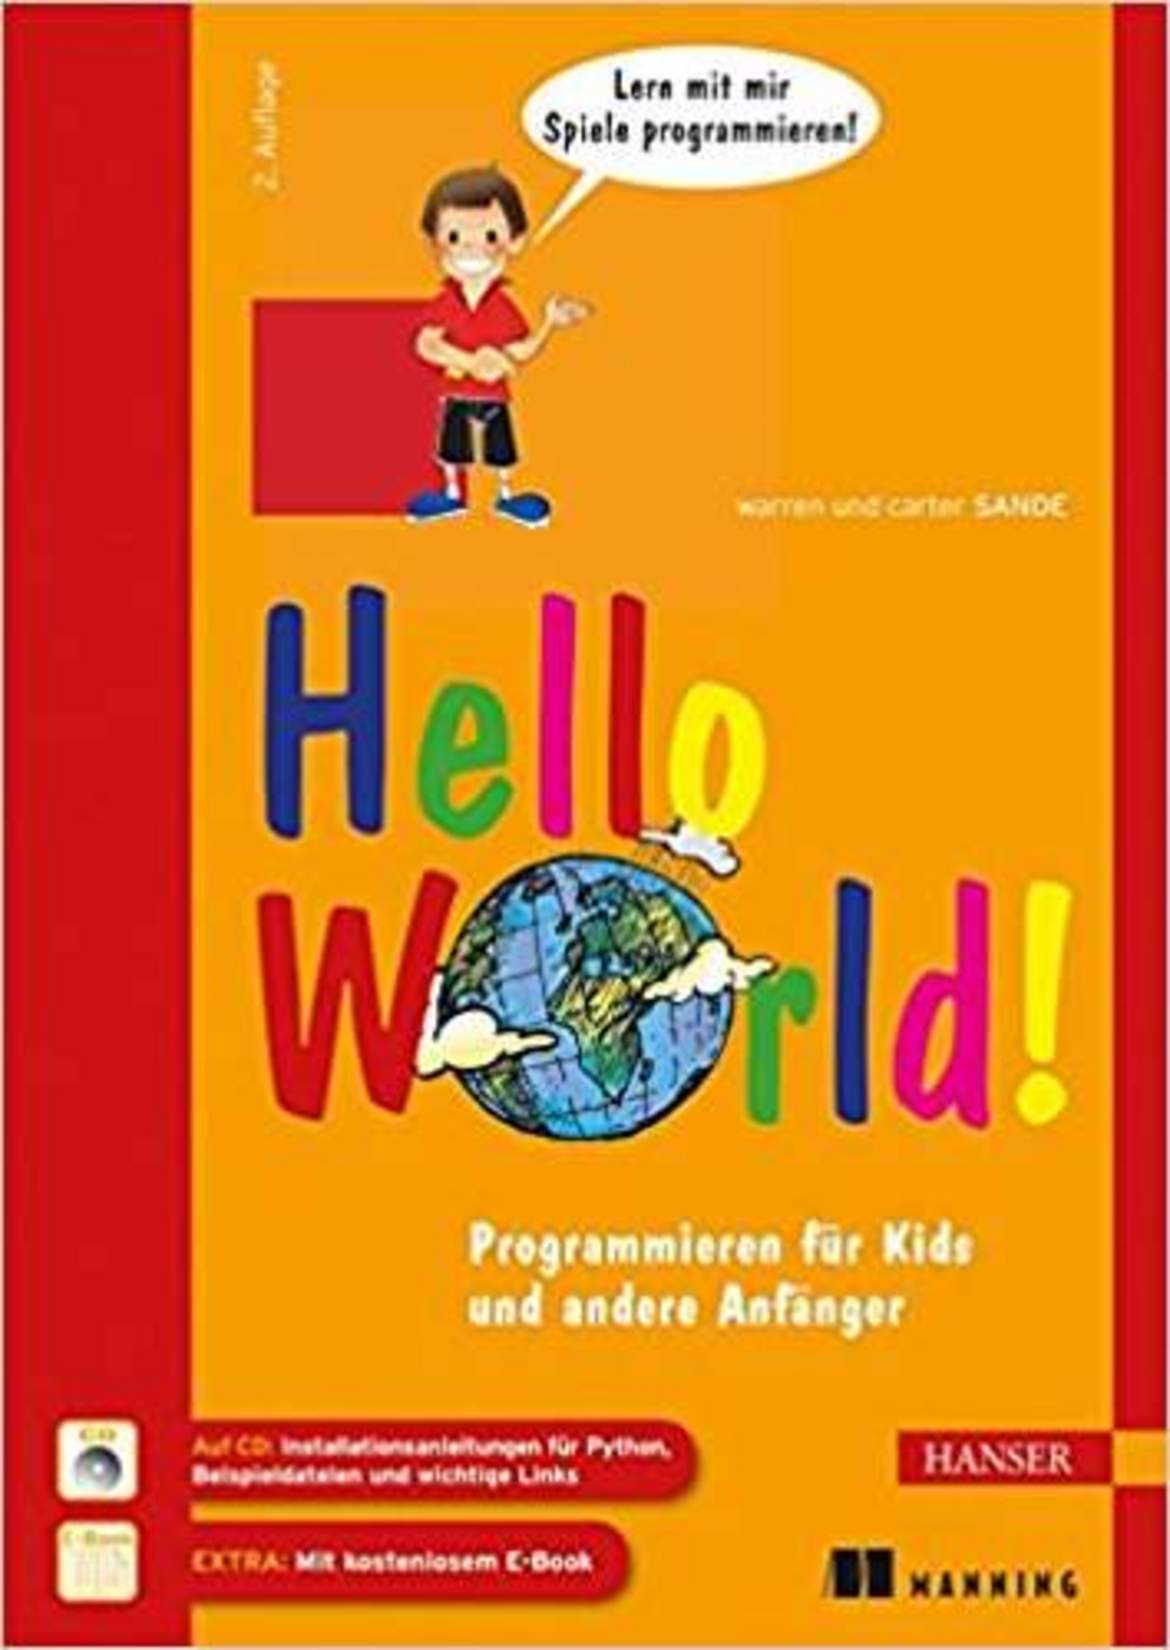 Hello World - Programmieren für Kids und andere Anfänger